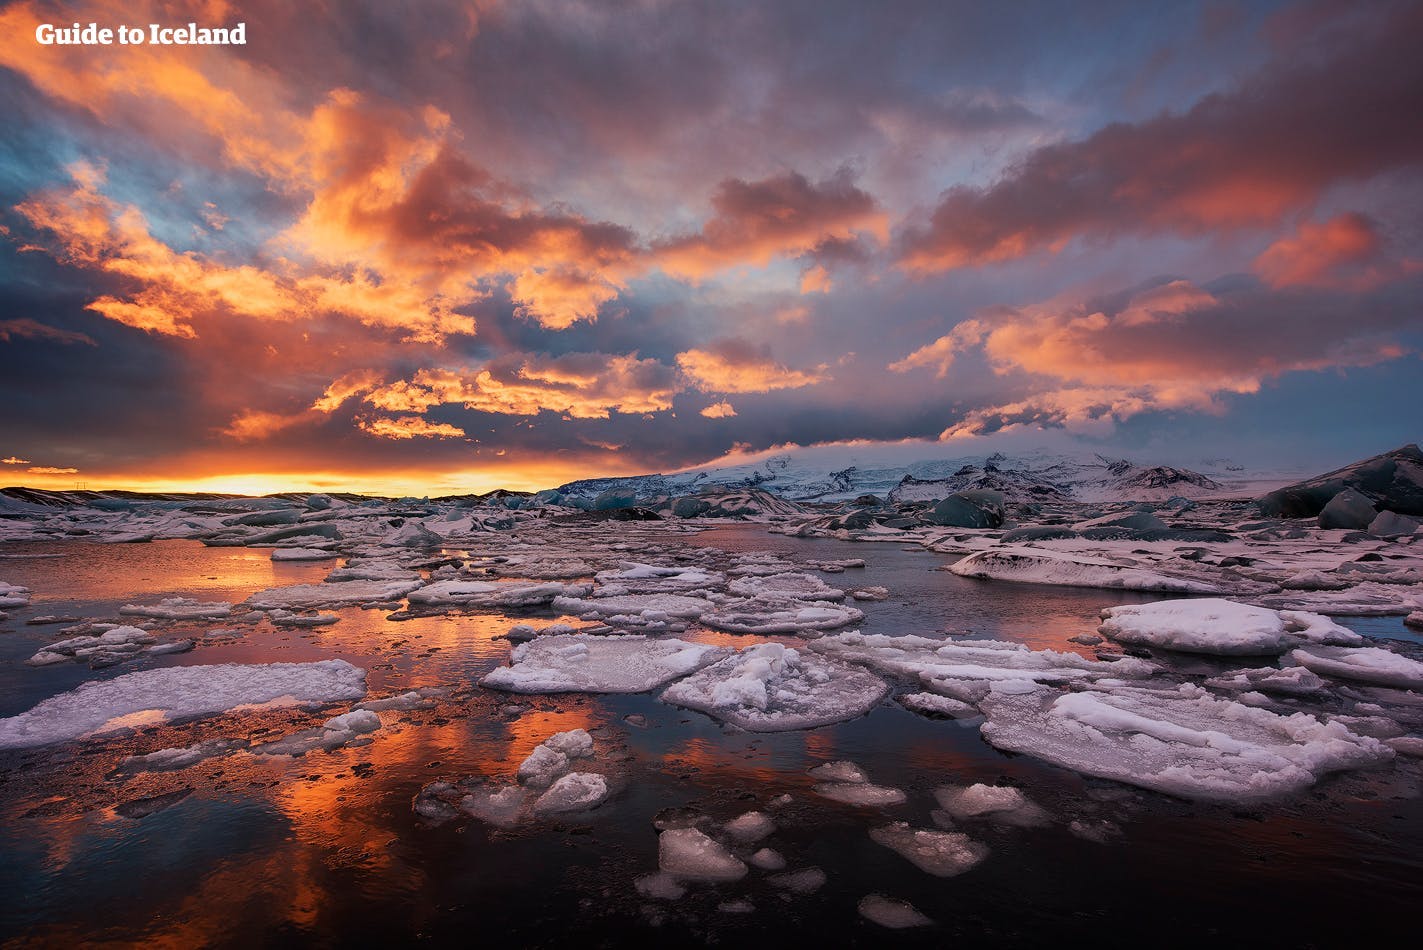 Les magnifiques paysages gelés de la lagune glaciaire Jökulsárlón, située dans le sud de l’Islande.